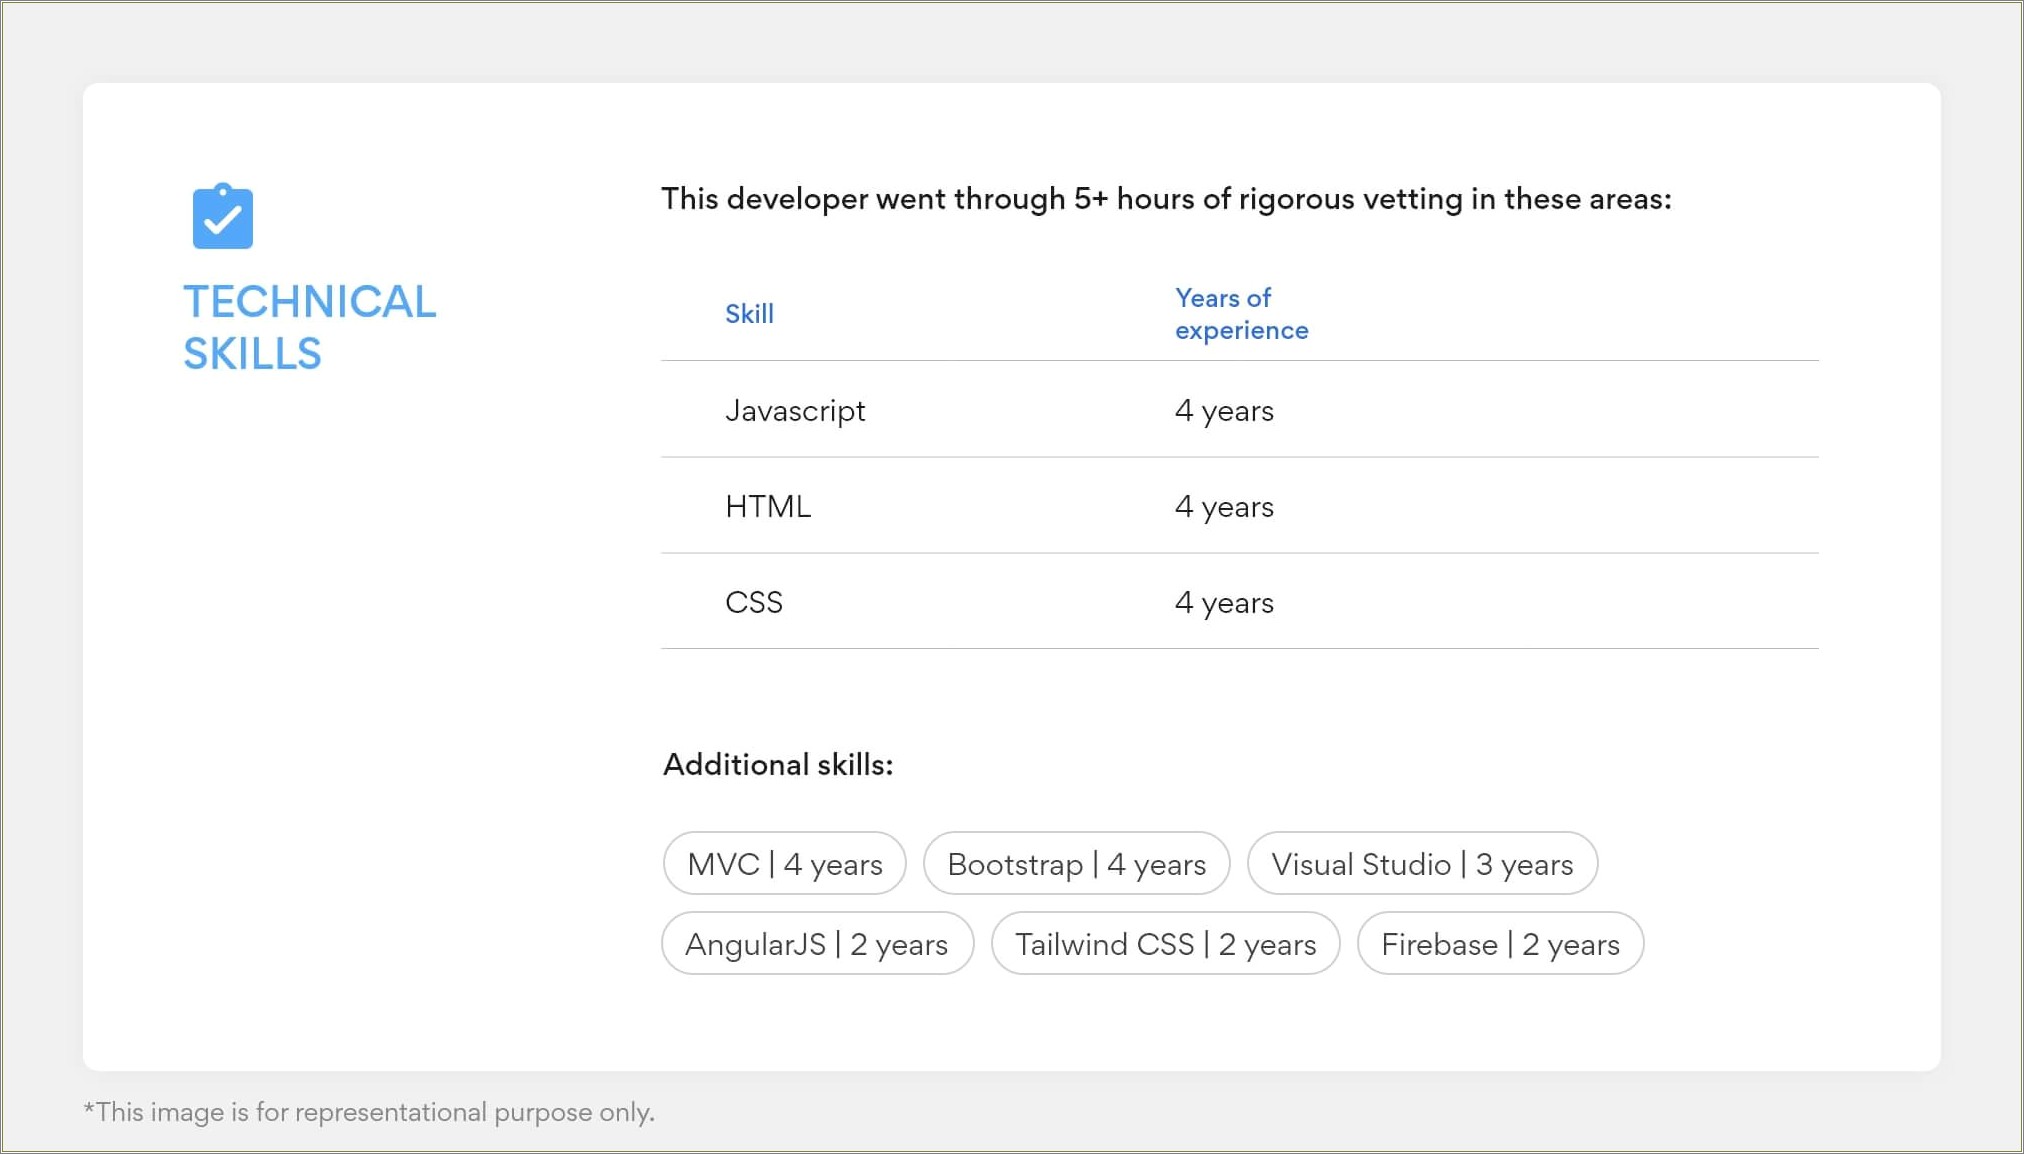 Sample Resume For Senior C# Developer